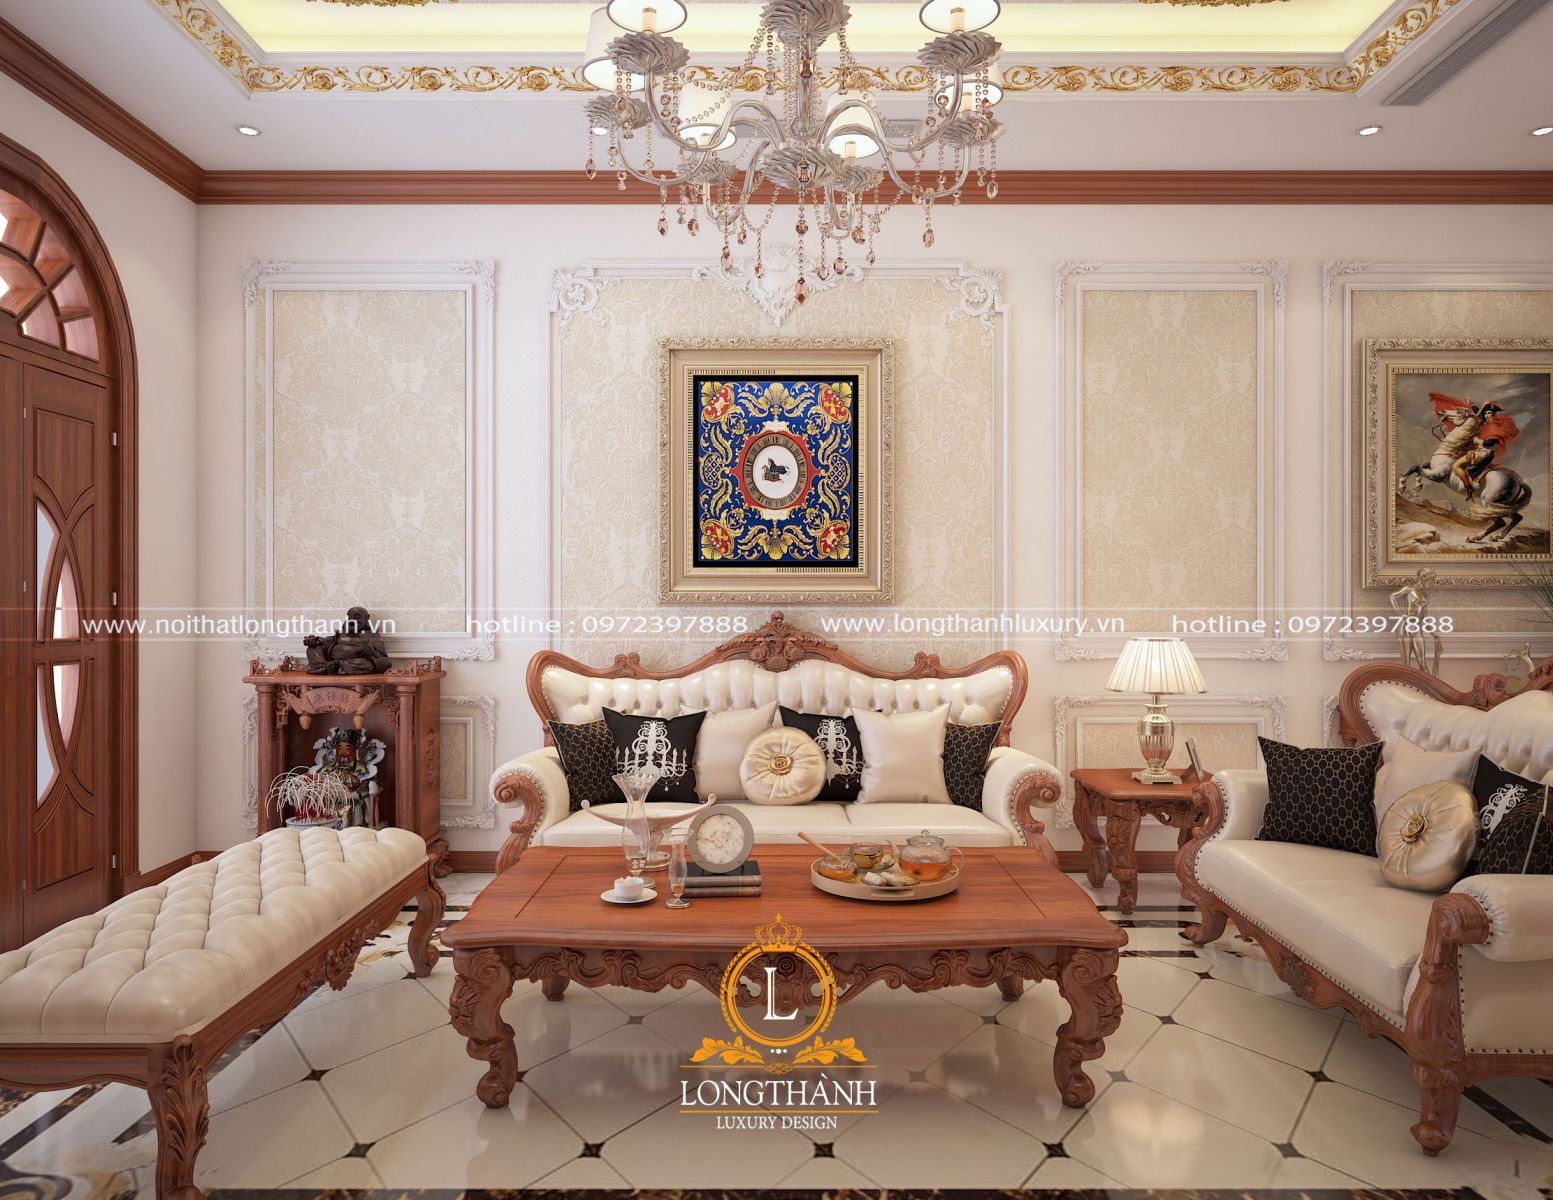 Bộ sofa với kích thước nhỏ nhắn phù hợp và cân đối với diện tích căn phòng khách gia đình